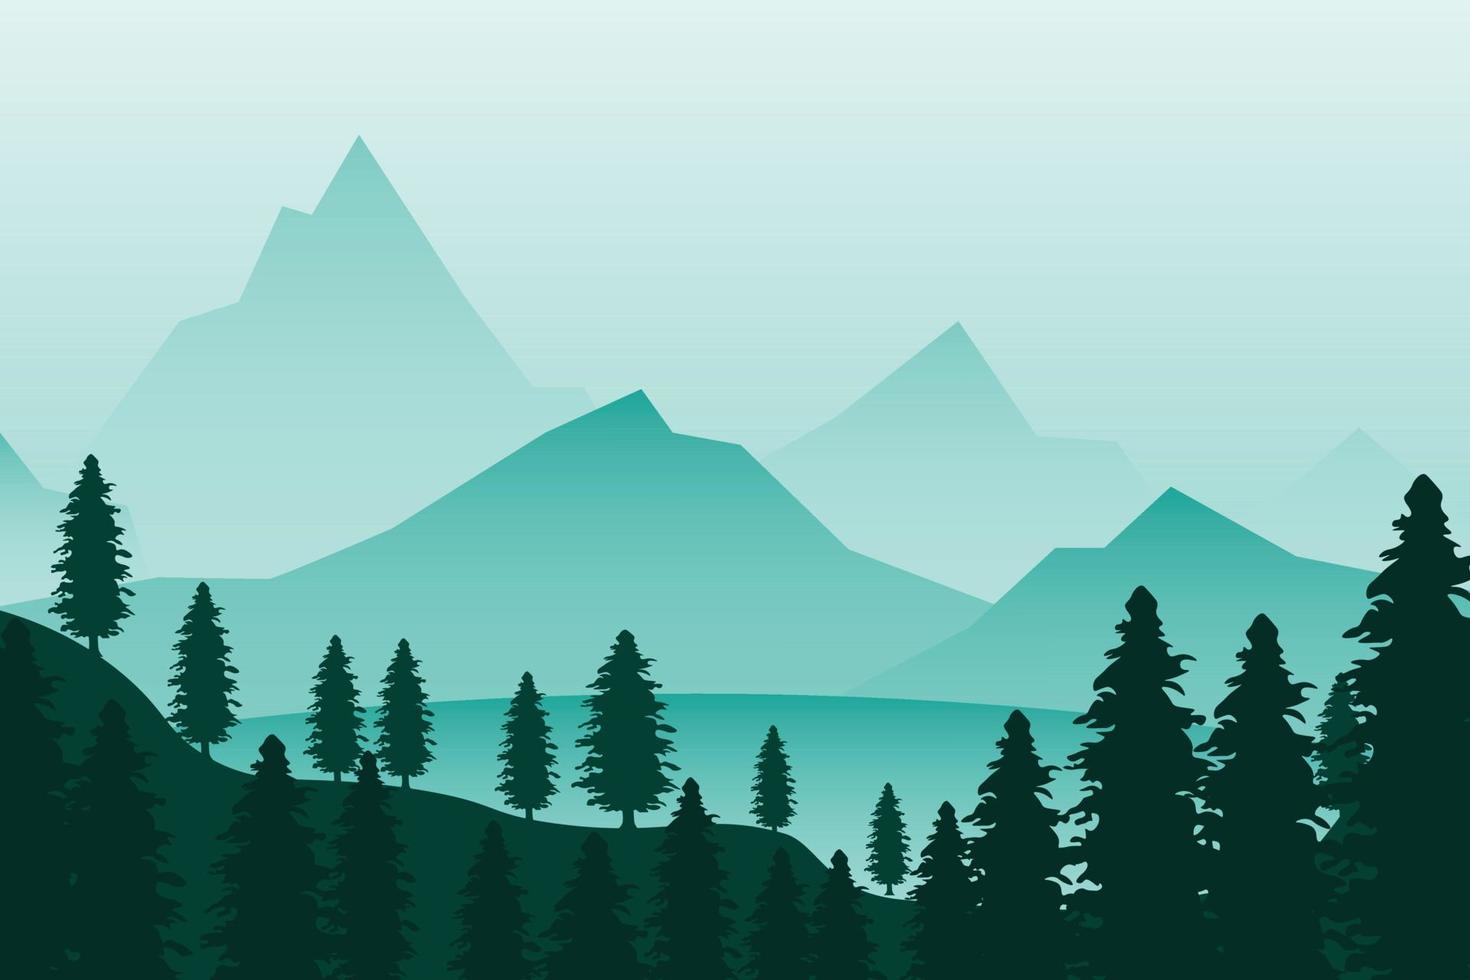 horizontale Landschaft mit Wald, See und Bergen. Premium-Vektor vektor